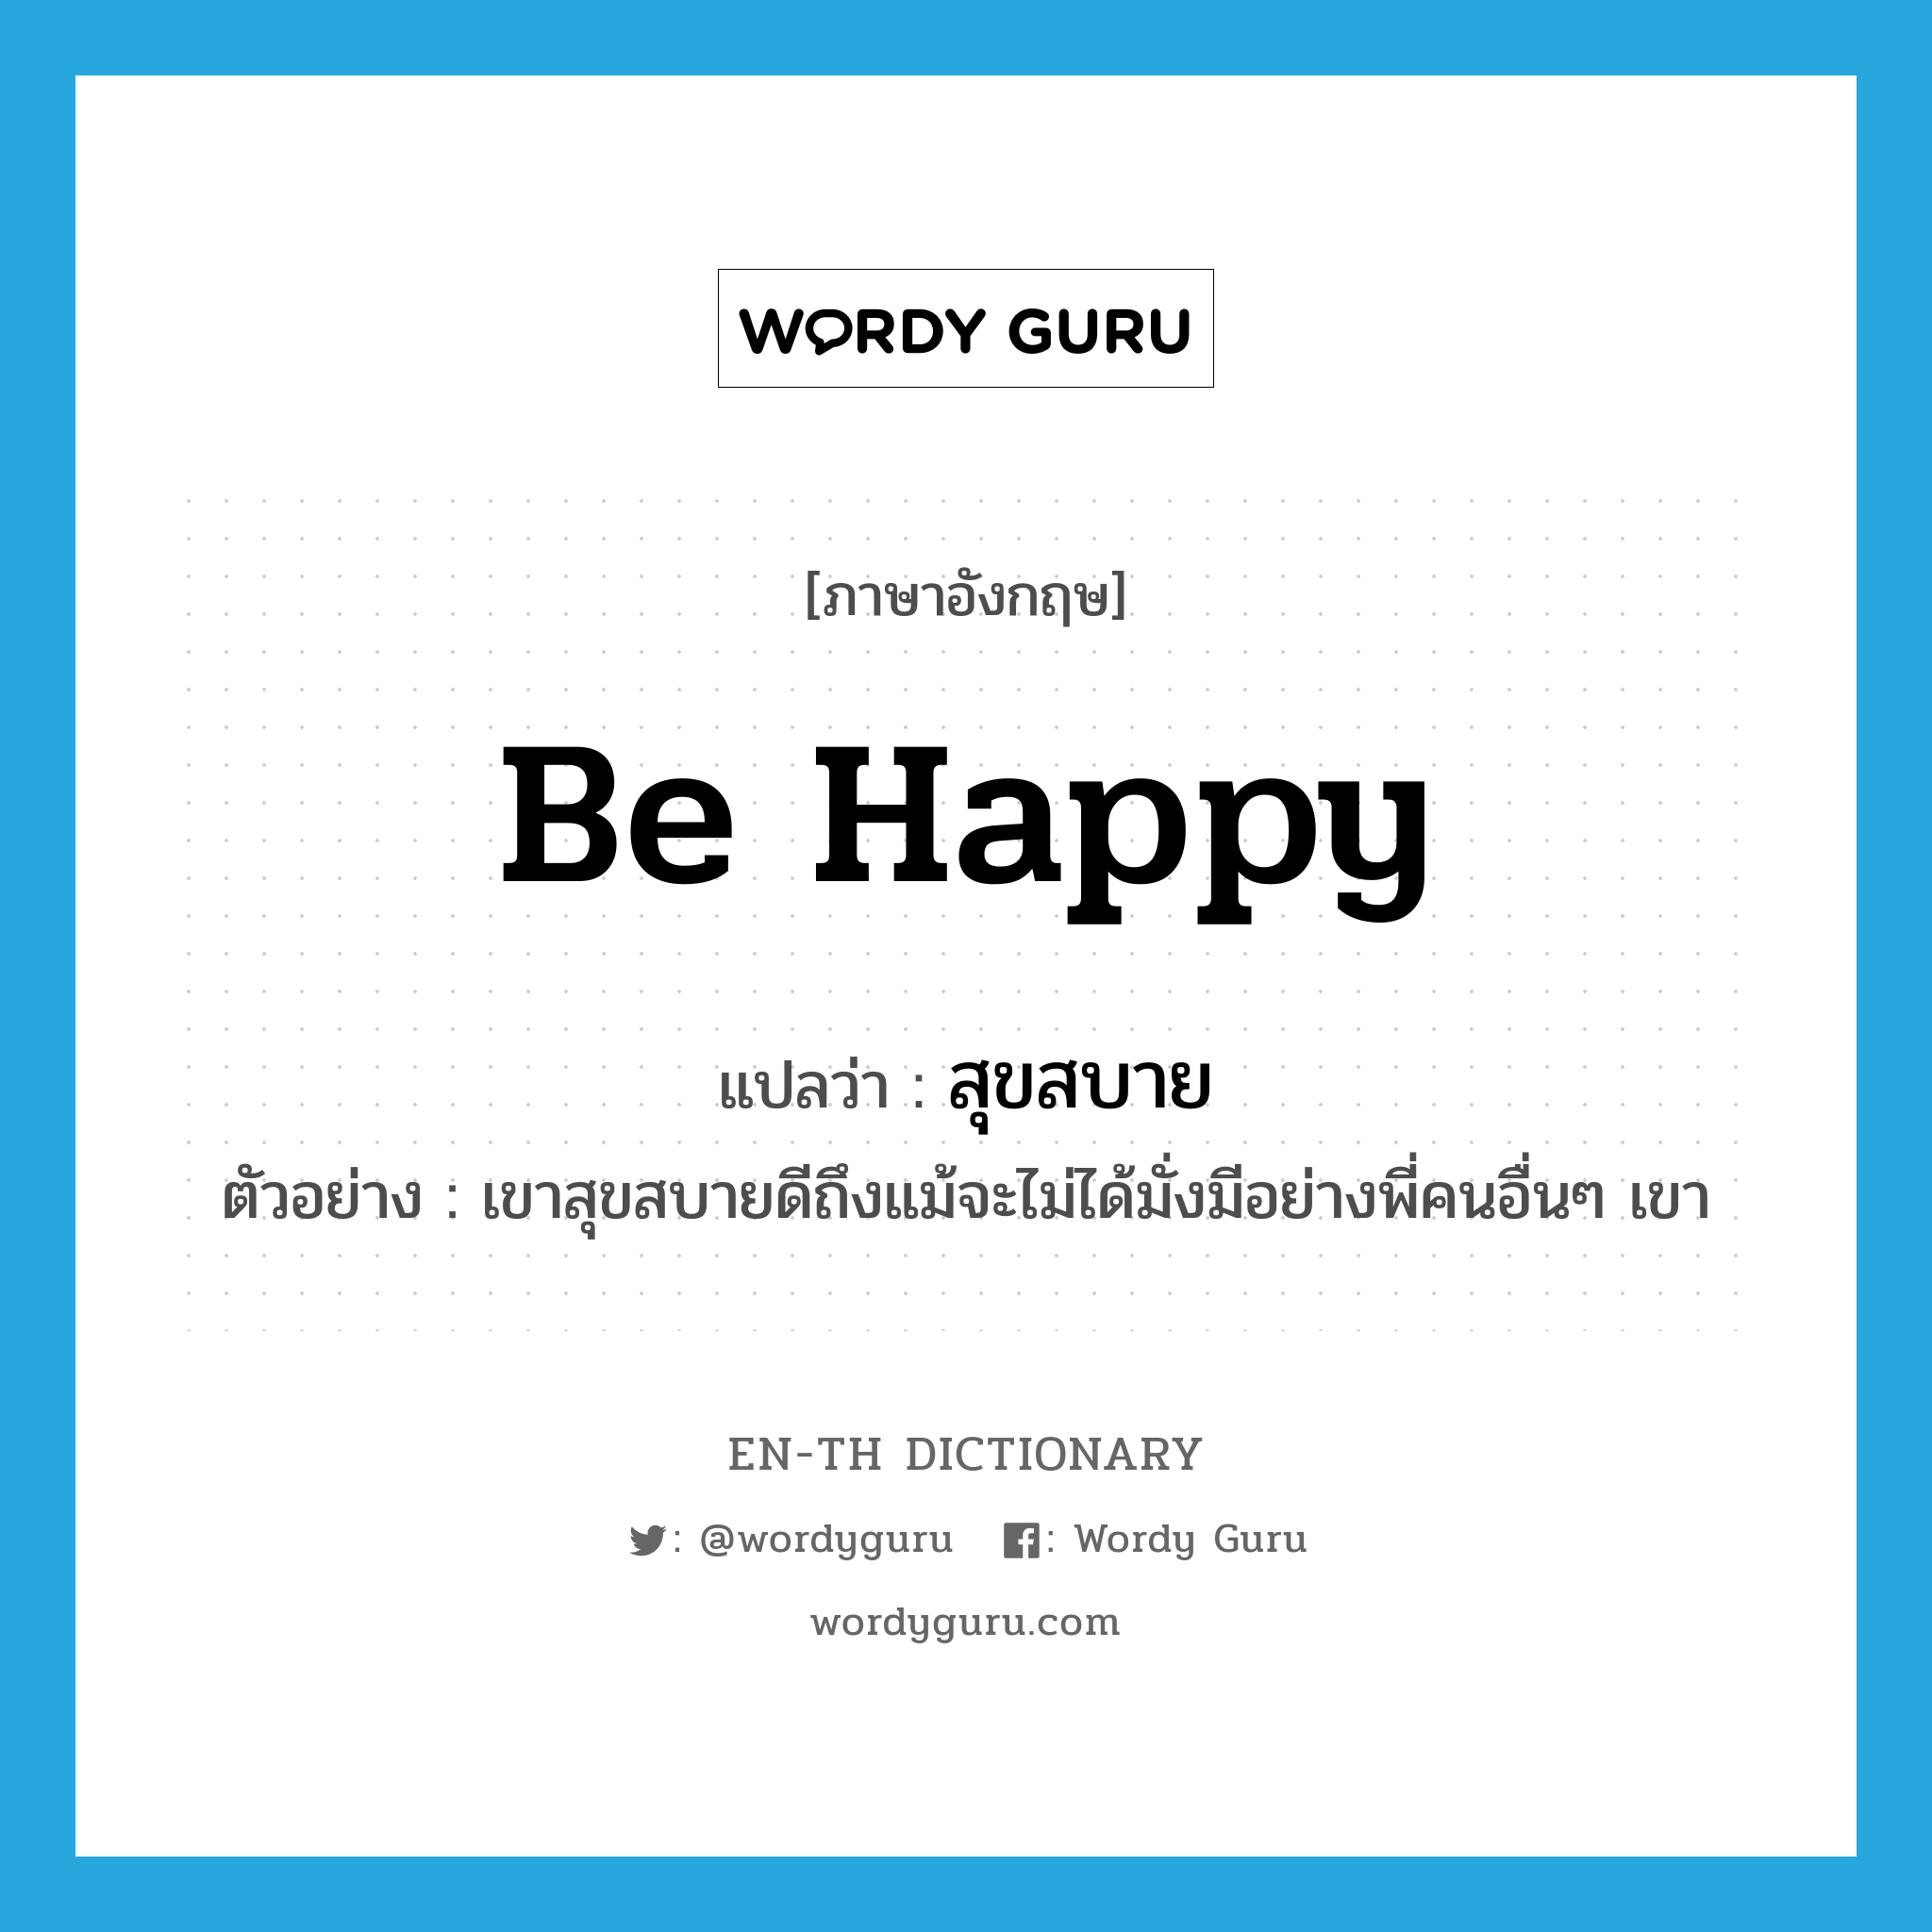 be happy แปลว่า?, คำศัพท์ภาษาอังกฤษ be happy แปลว่า สุขสบาย ประเภท V ตัวอย่าง เขาสุขสบายดีถึงแม้จะไม่ได้มั่งมีอย่างพี่คนอื่นๆ เขา หมวด V